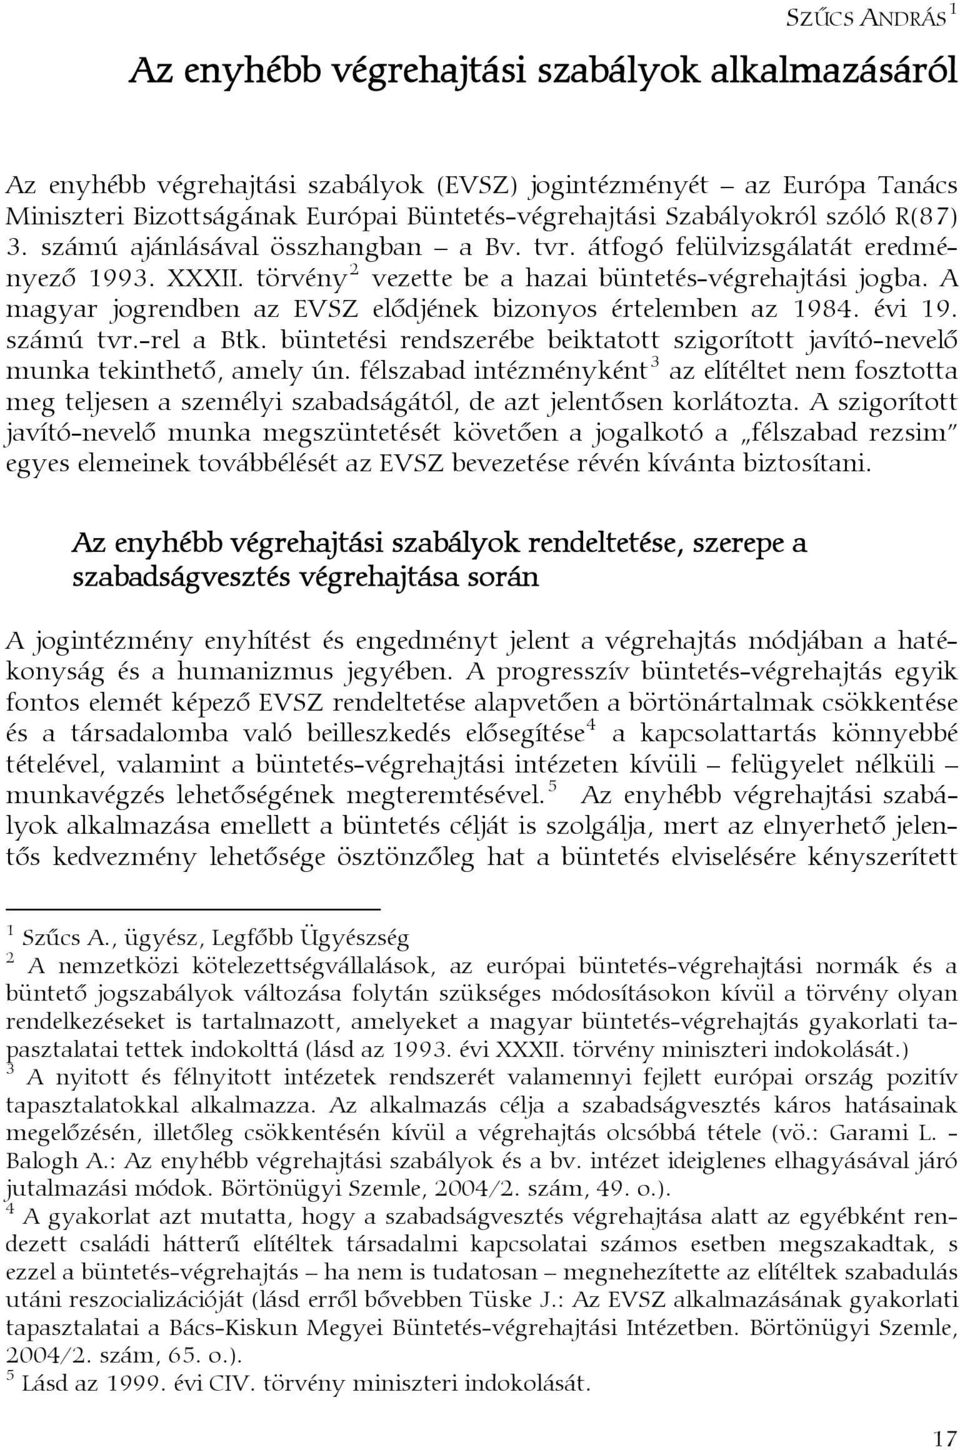 A magyar jogrendben az EVSZ elődjének bizonyos értelemben az 1984. évi 19. számú tvr.-rel a Btk. büntetési rendszerébe beiktatott szigorított javító-nevelő munka tekinthető, amely ún.